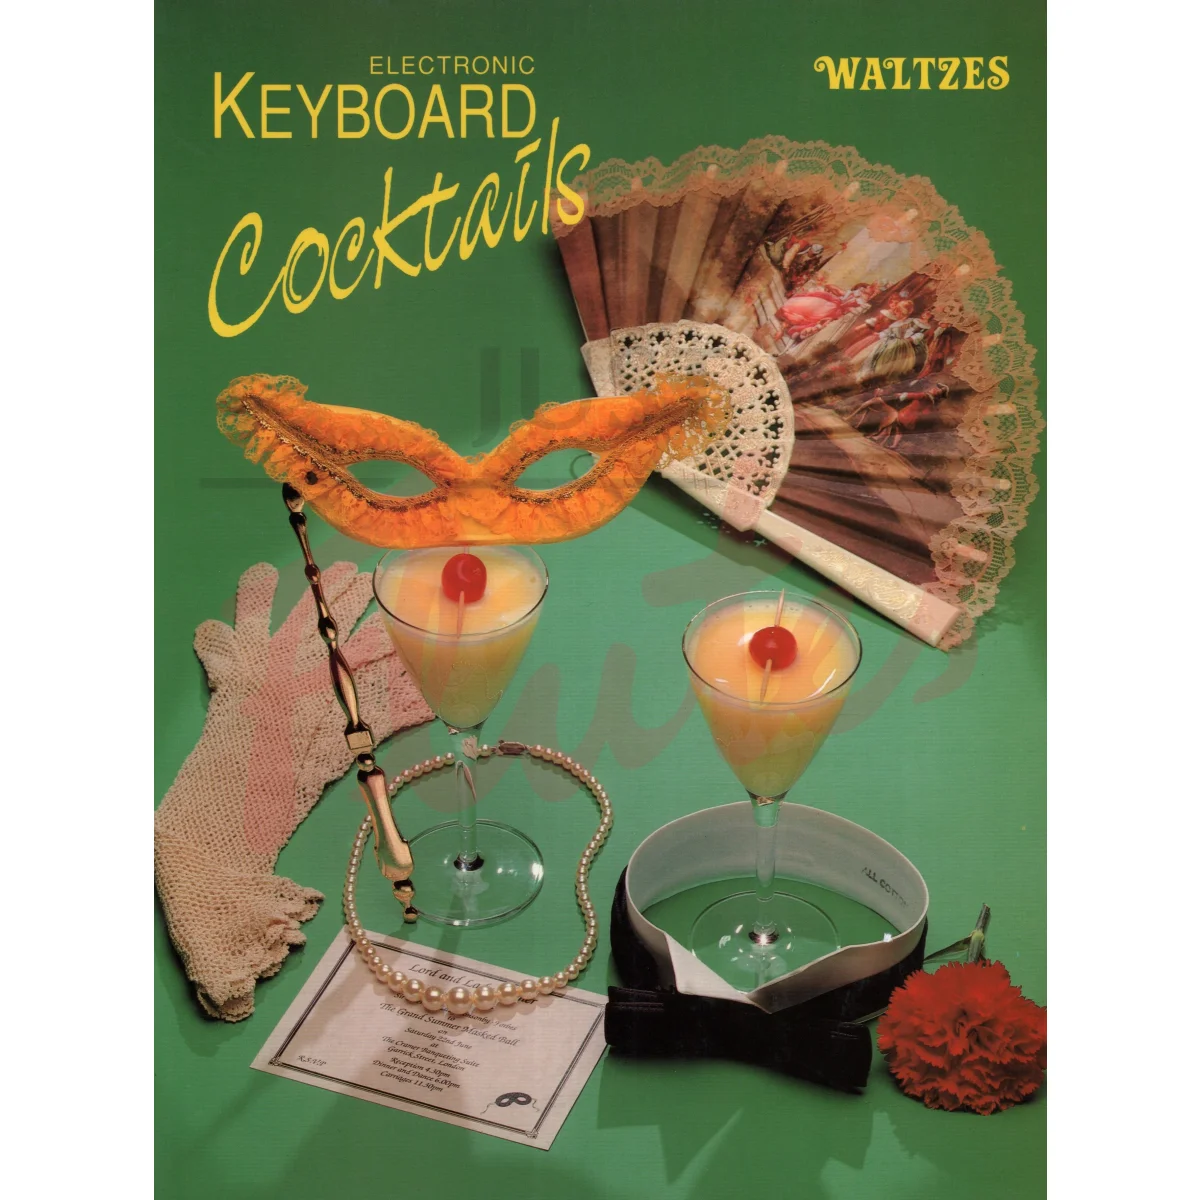 Keyboard Cocktails: Waltzes